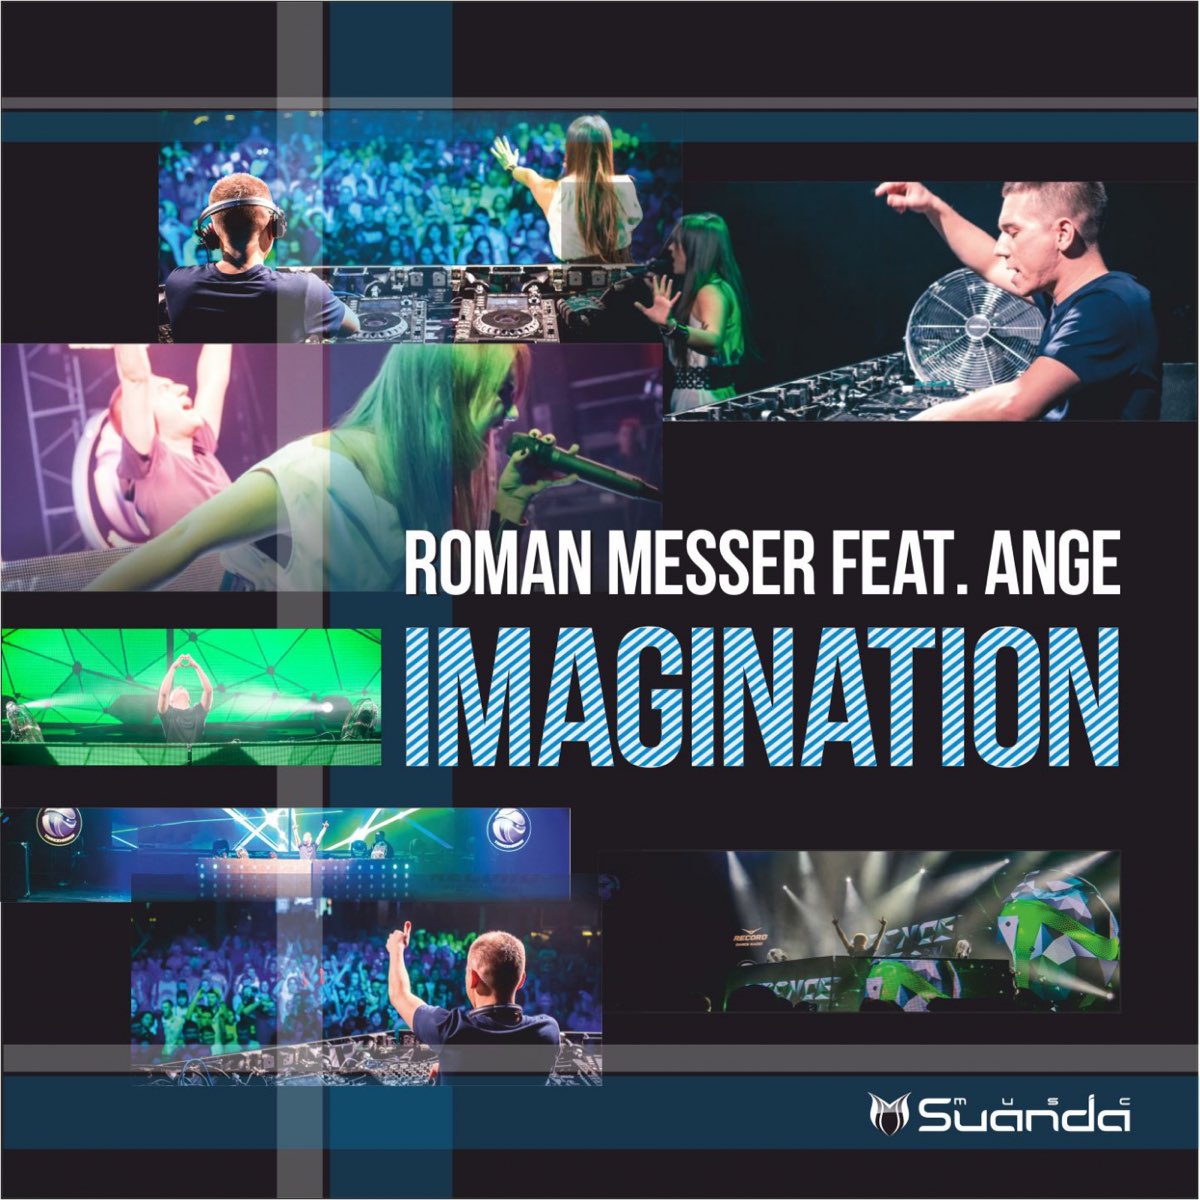 Imagination feat. Песни Roman Messer фото. Roman Messer-the Edge. DJ Roman Messer фото с семьей.